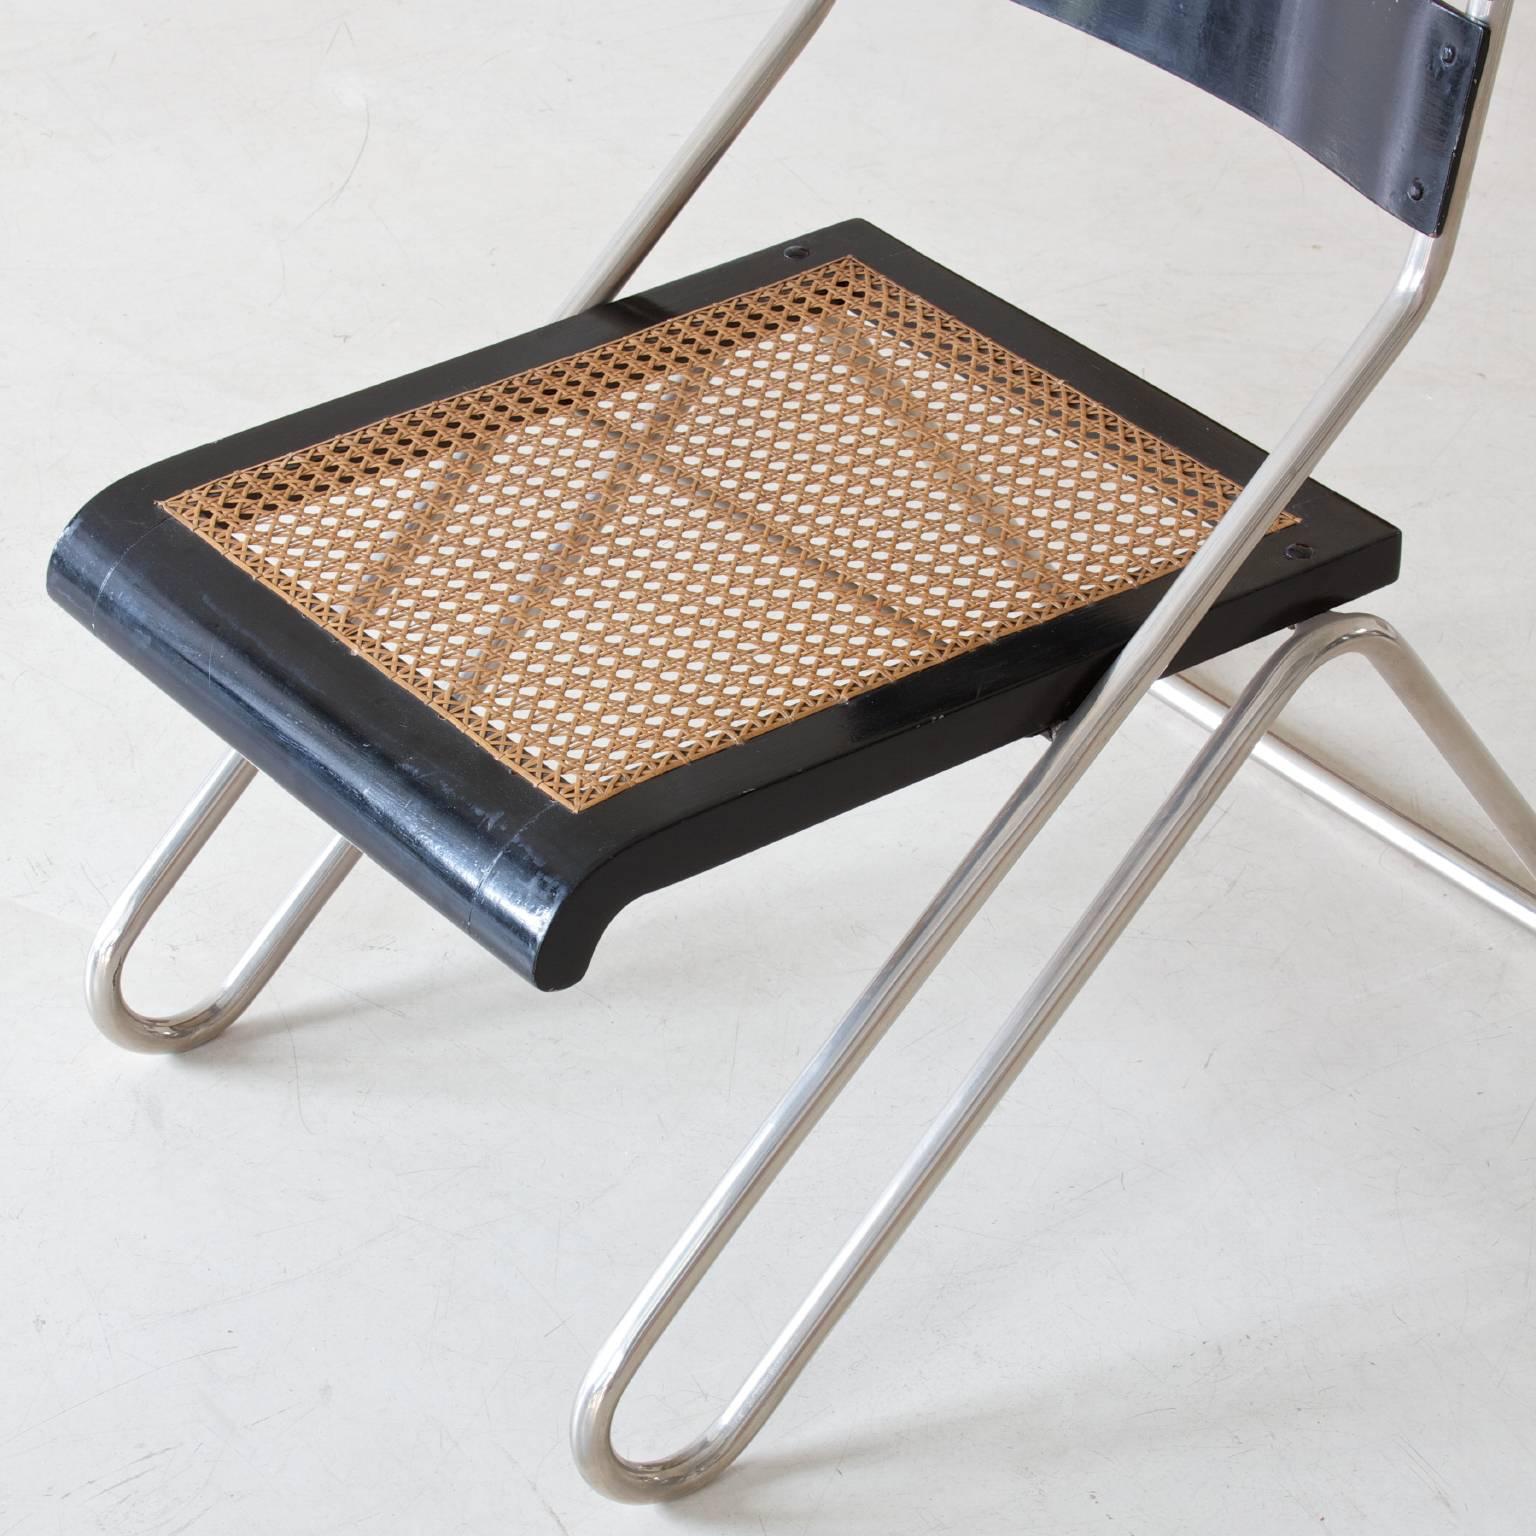 Lacquered Bauhaus Tubular Steel Chair by Erich Dieckmann, Manufactured by Cebaso, 1931